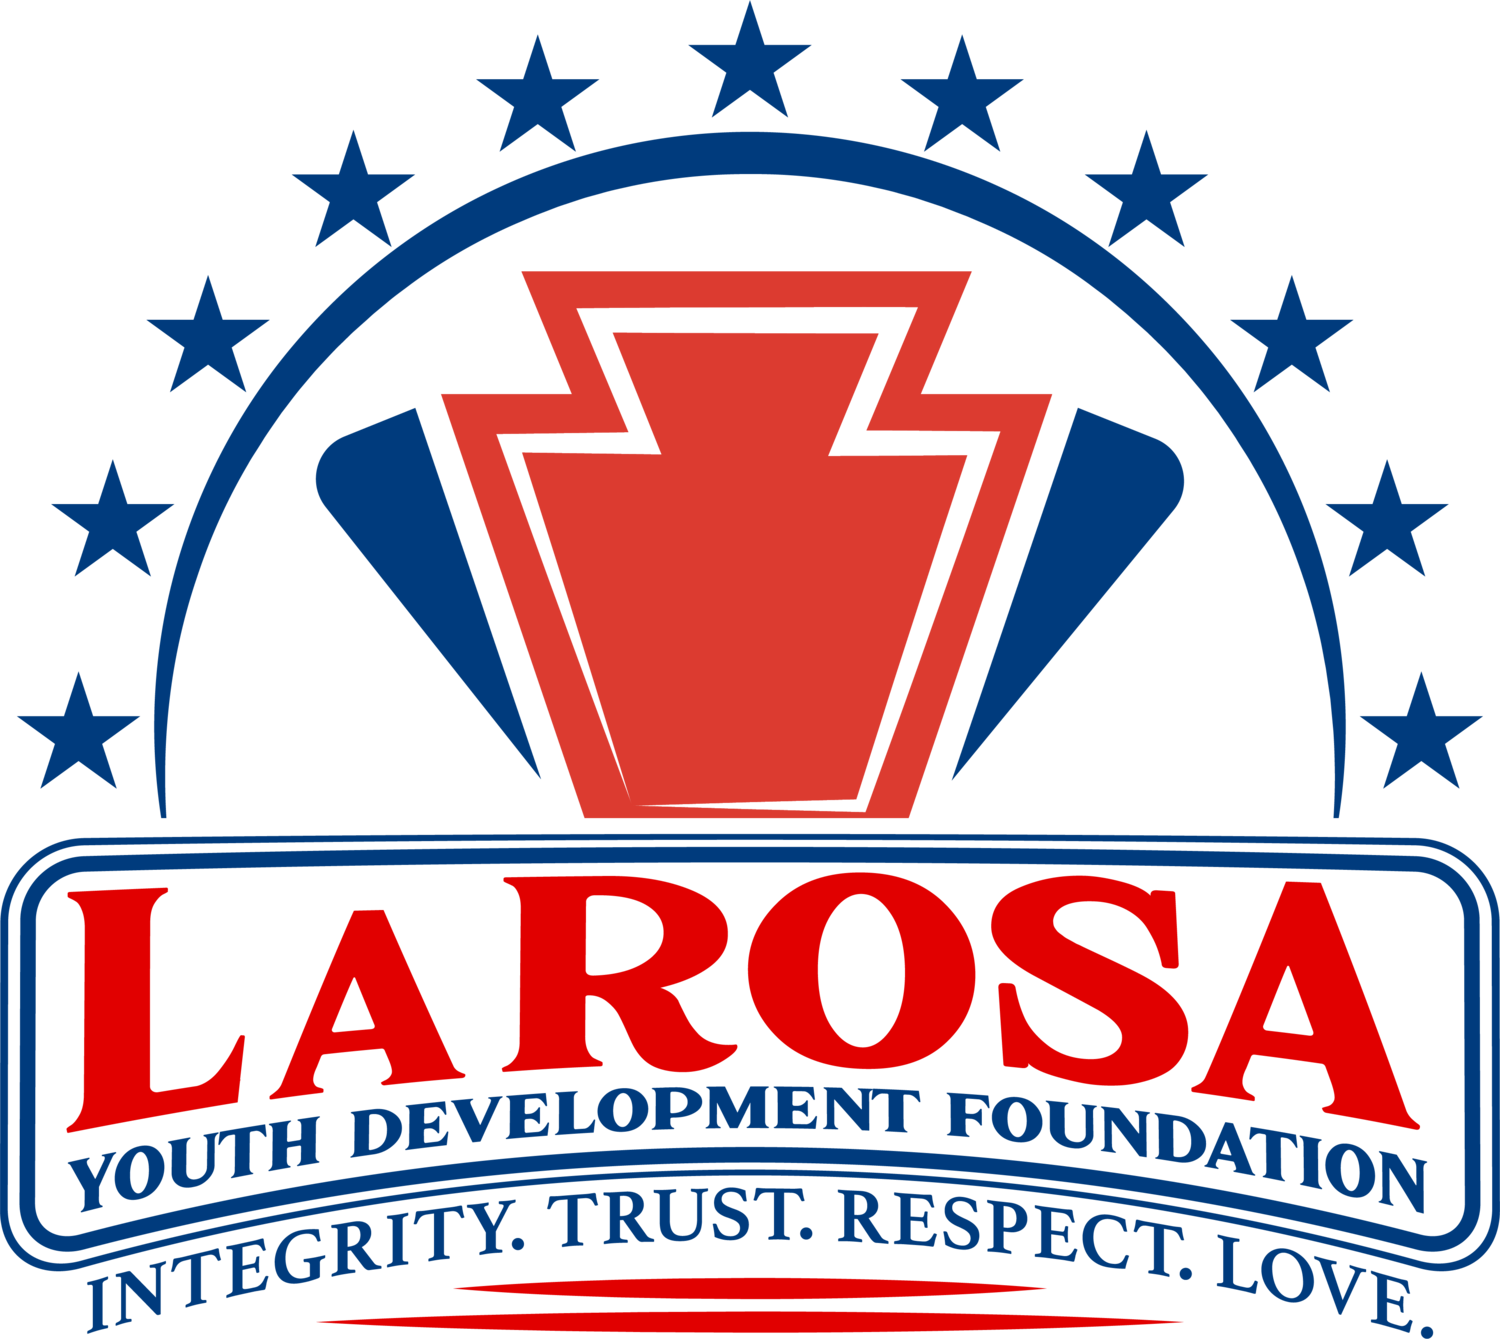 LaRosa Youth Club